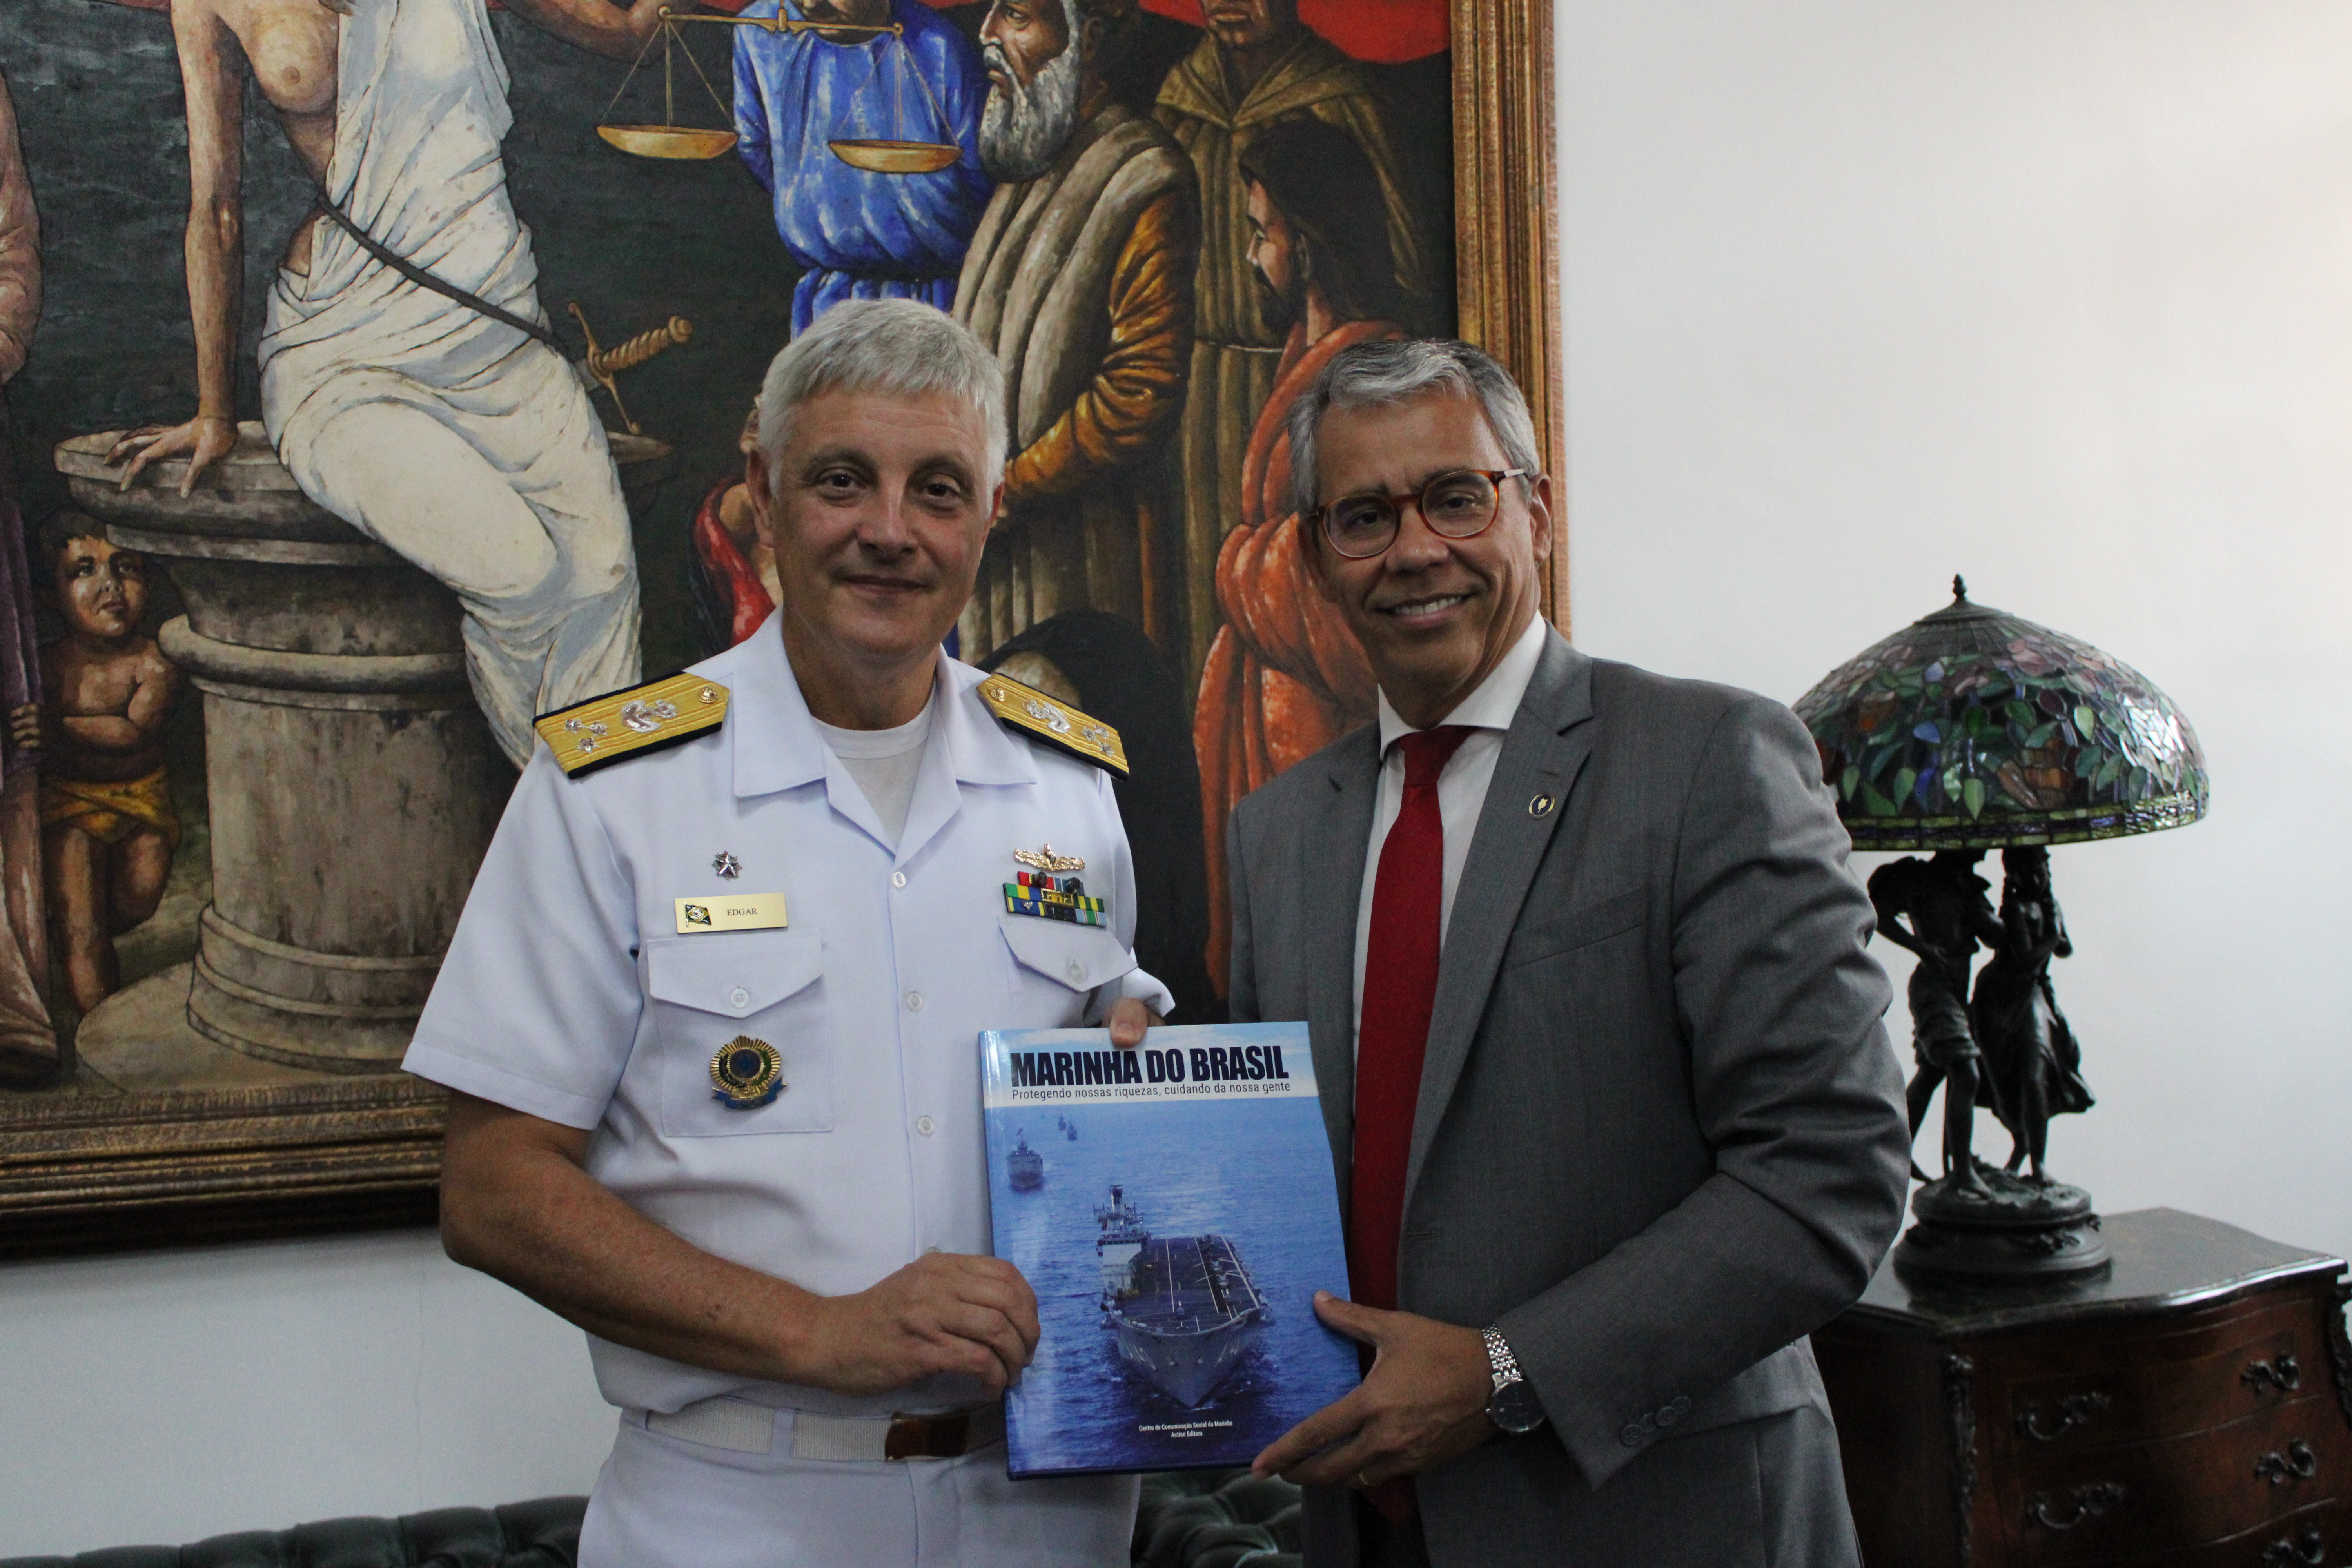 O presidente do TJMA recebendo o livro da Marinha